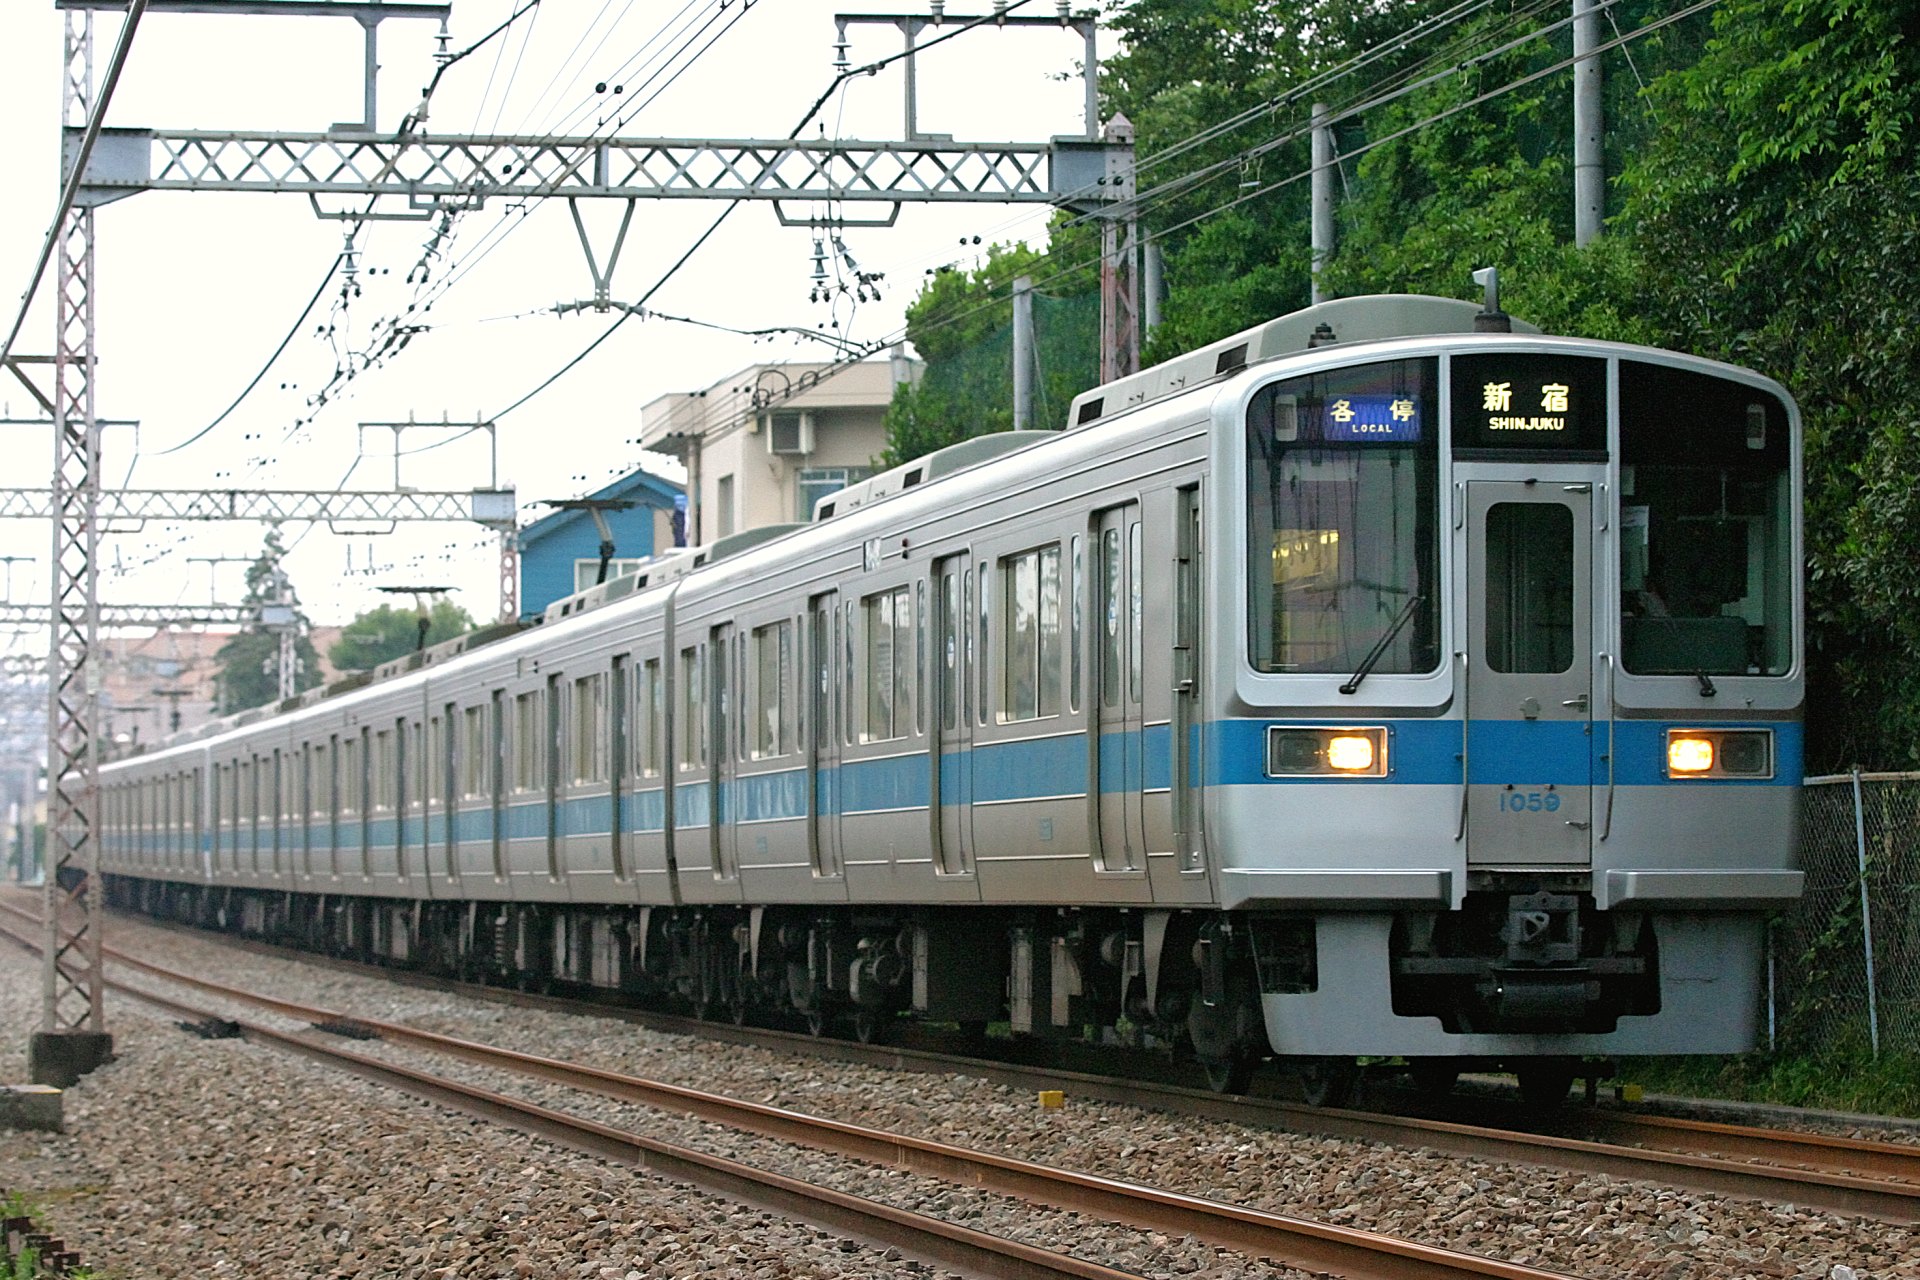 小田急の小田原線で最も線路の直線が長い場所はどこなのか Odapedia 小田急のファンブログ